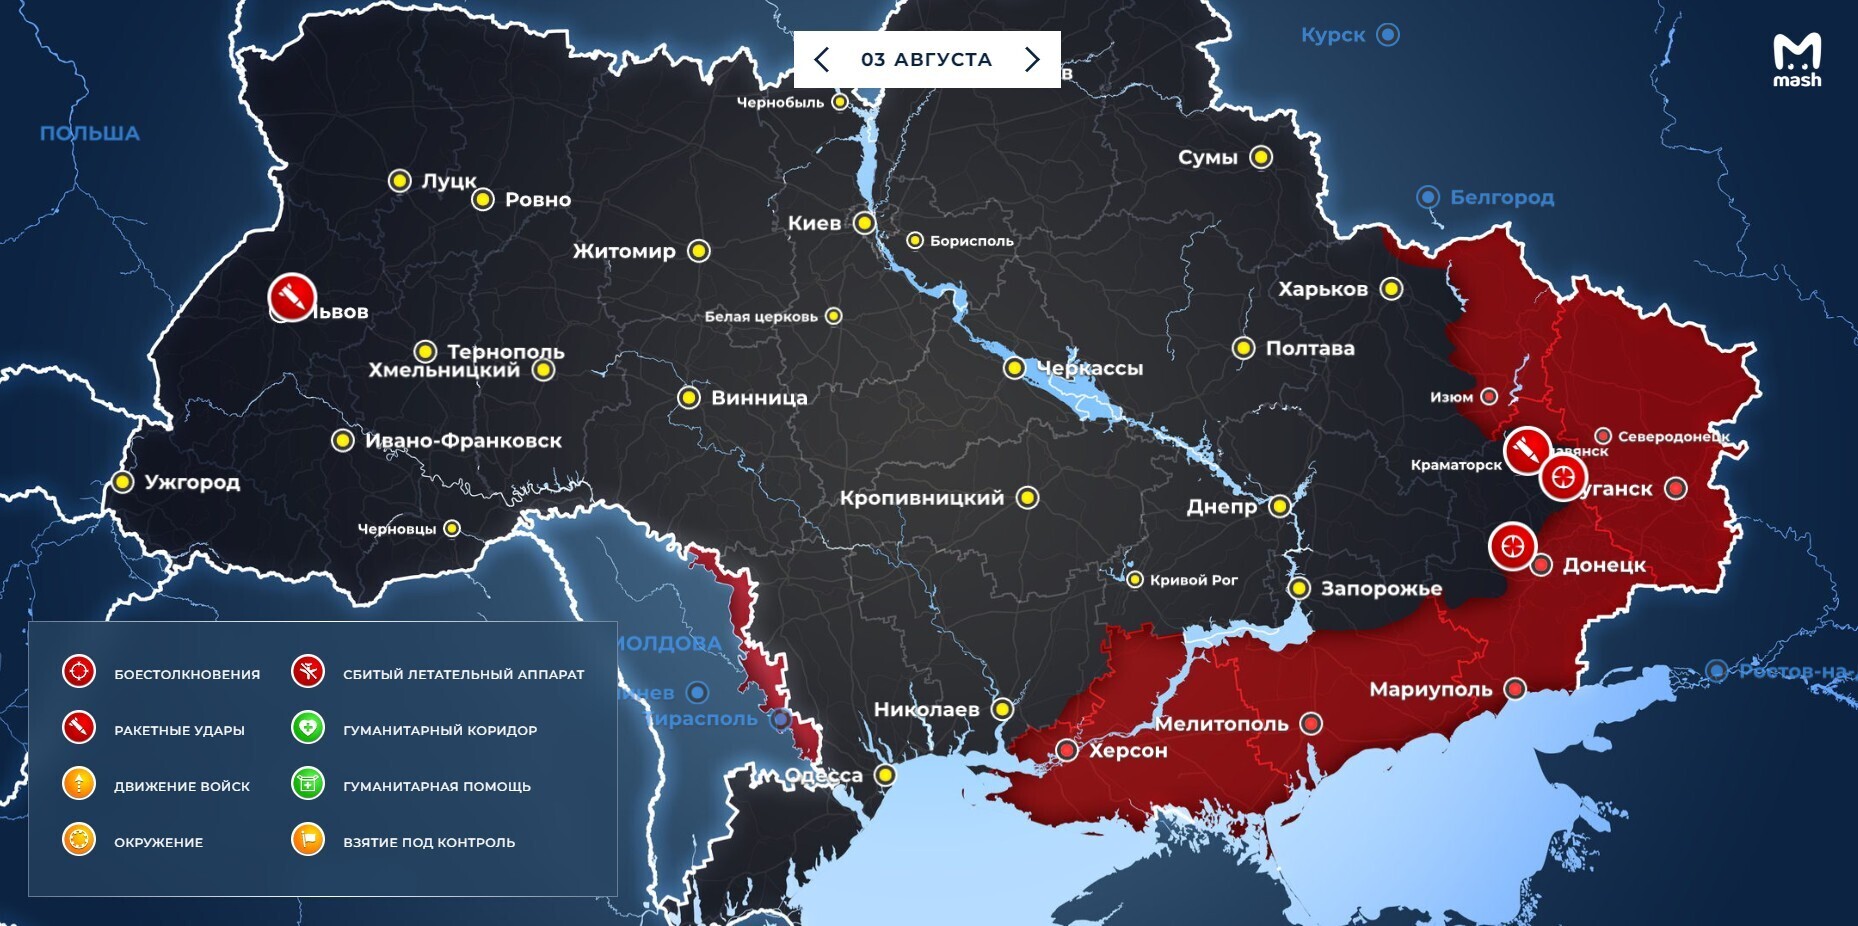 Интерактивная карта спецоперации вооруженных сил